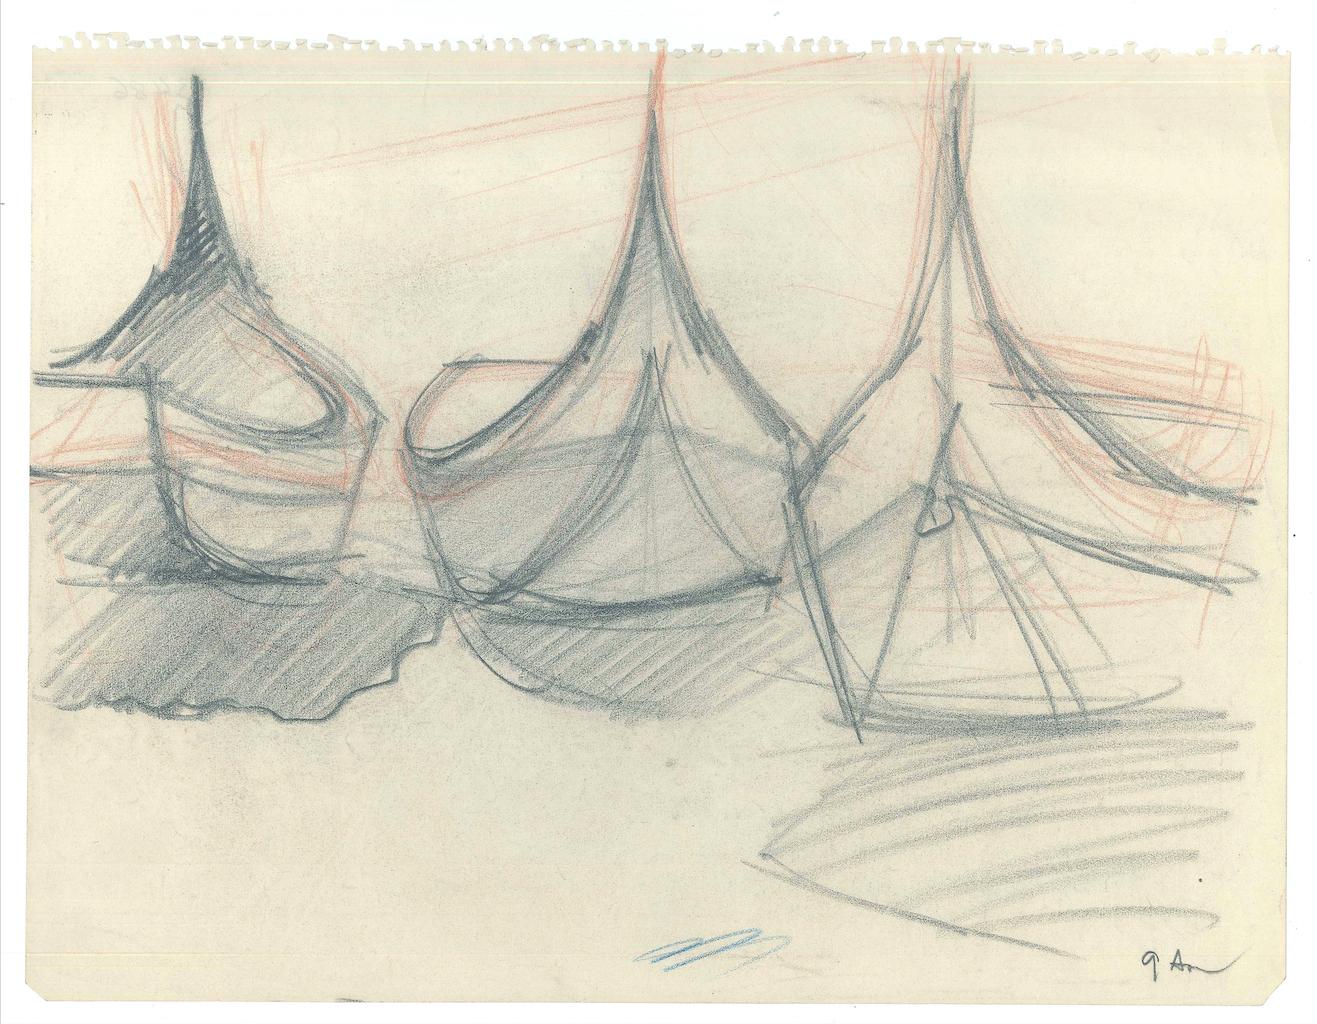 Unknown Figurative Art - Boats - Original Pencil on Paper - 1947